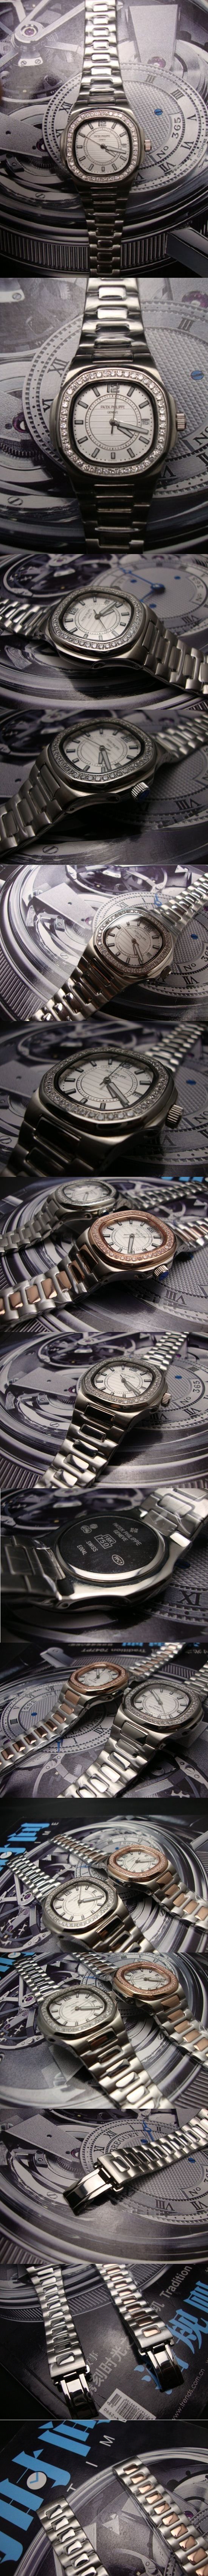 おしゃれなブランド時計がPATEK PHILIPPE-パテック フィリップ腕時計 パテック フィリップ 男/女腕時計 PATEK-PHILIPPE-N-003A を提供します.